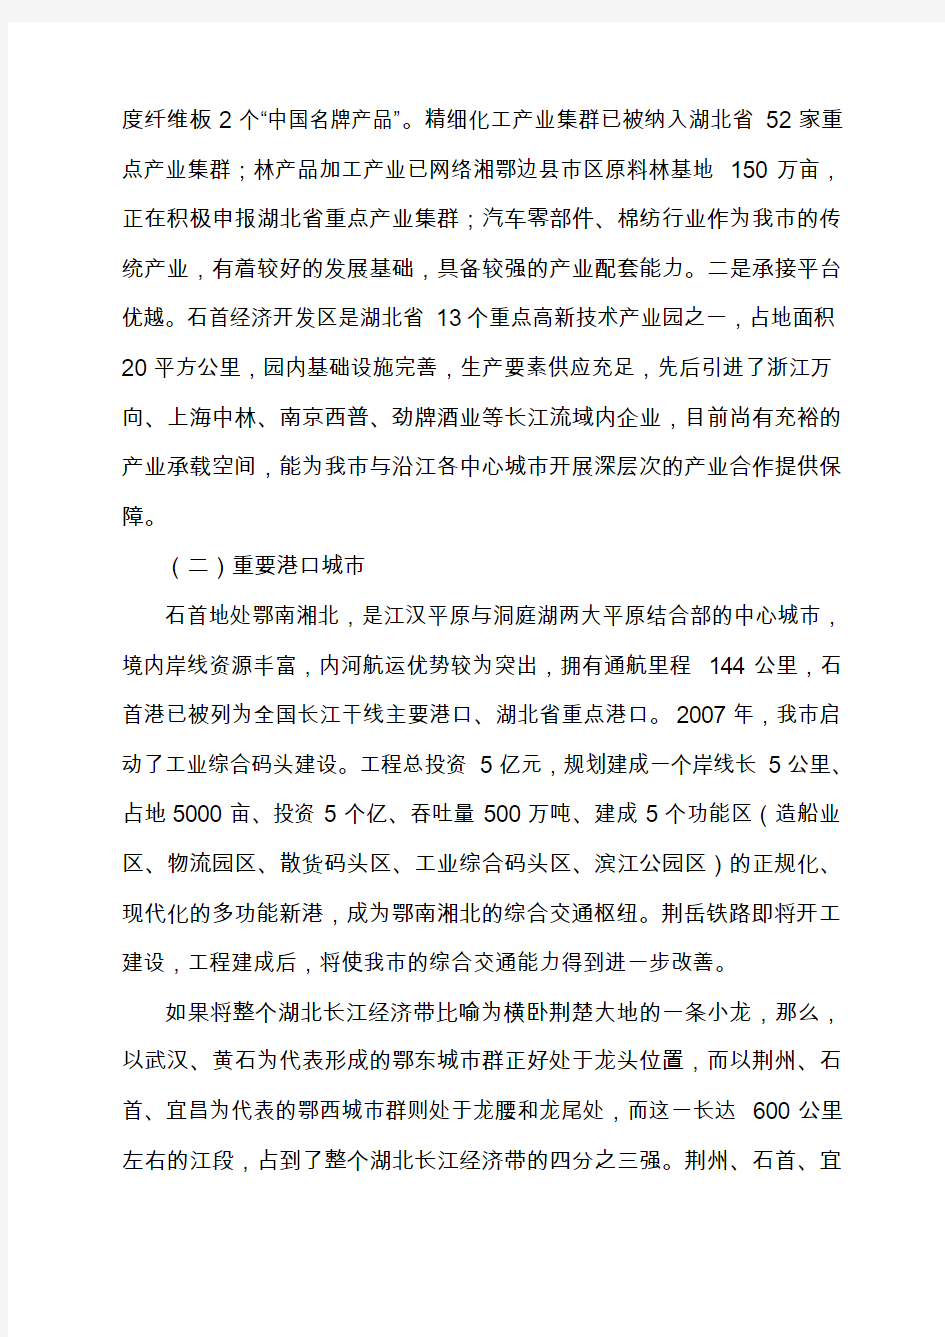 石首全力建设长江经济带重要节点